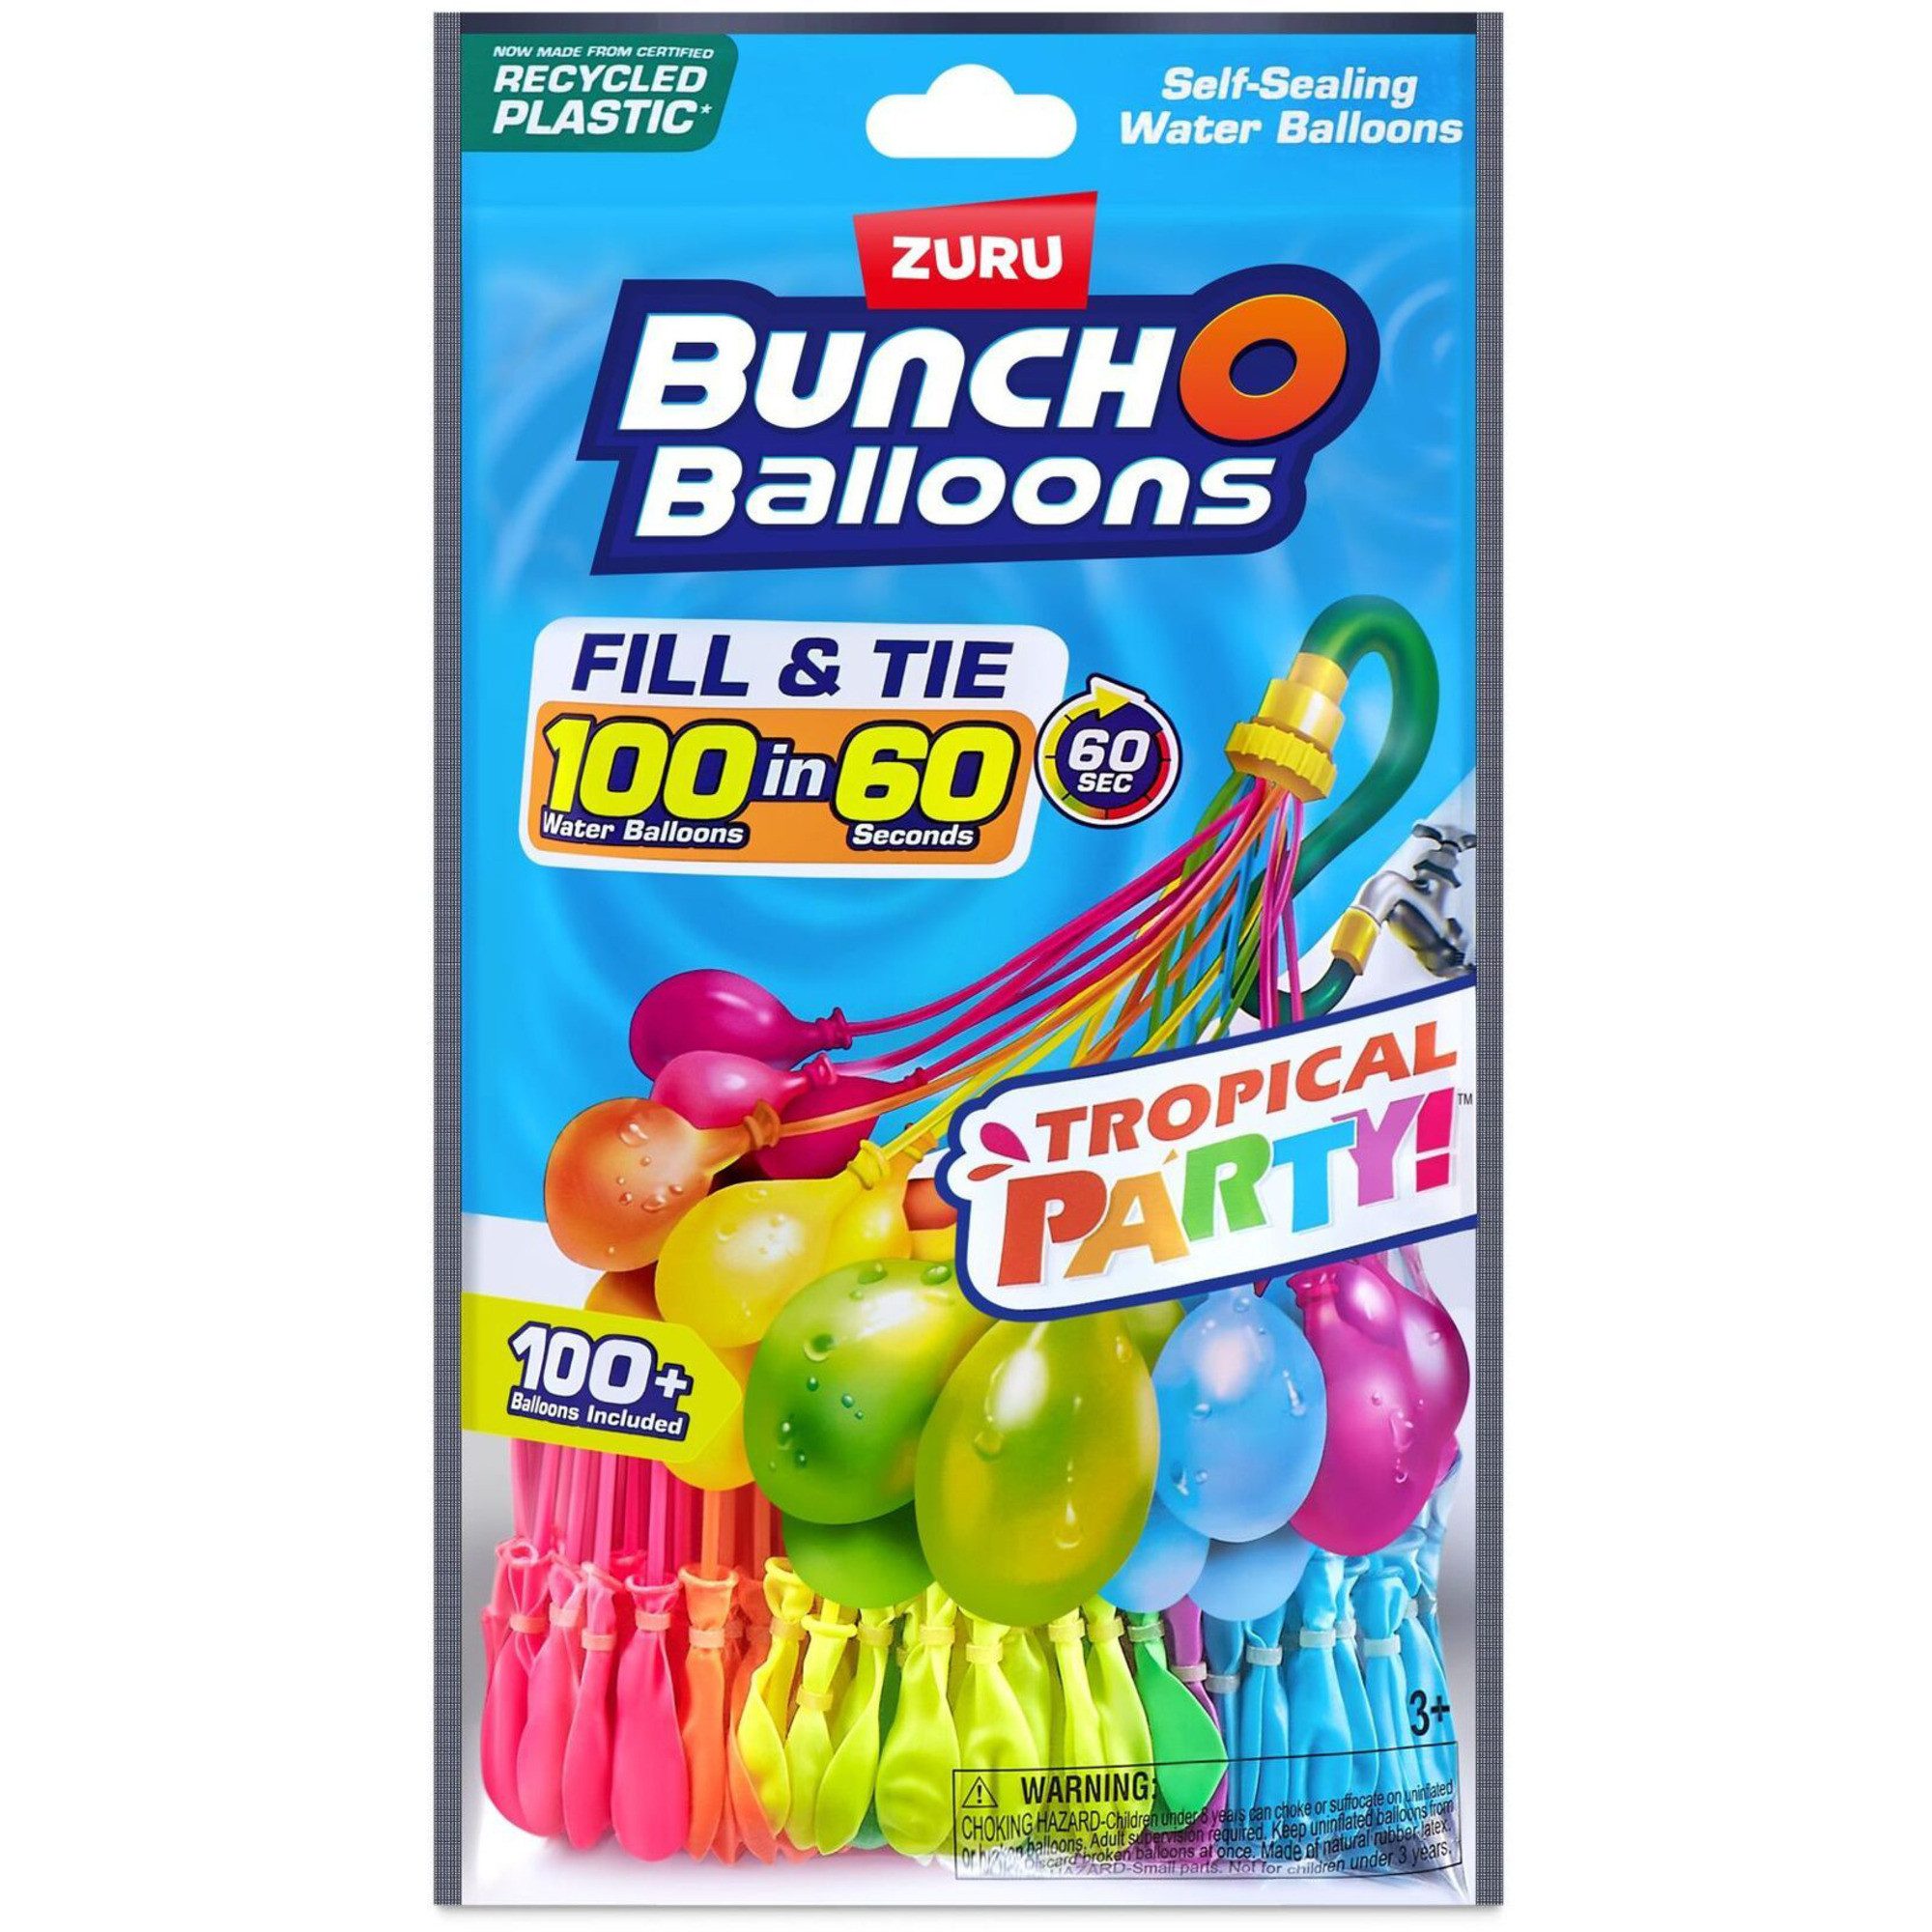 ZURU Badespielzeug Bunch O Balloons Wasserballons Tropical Party 100 Stück